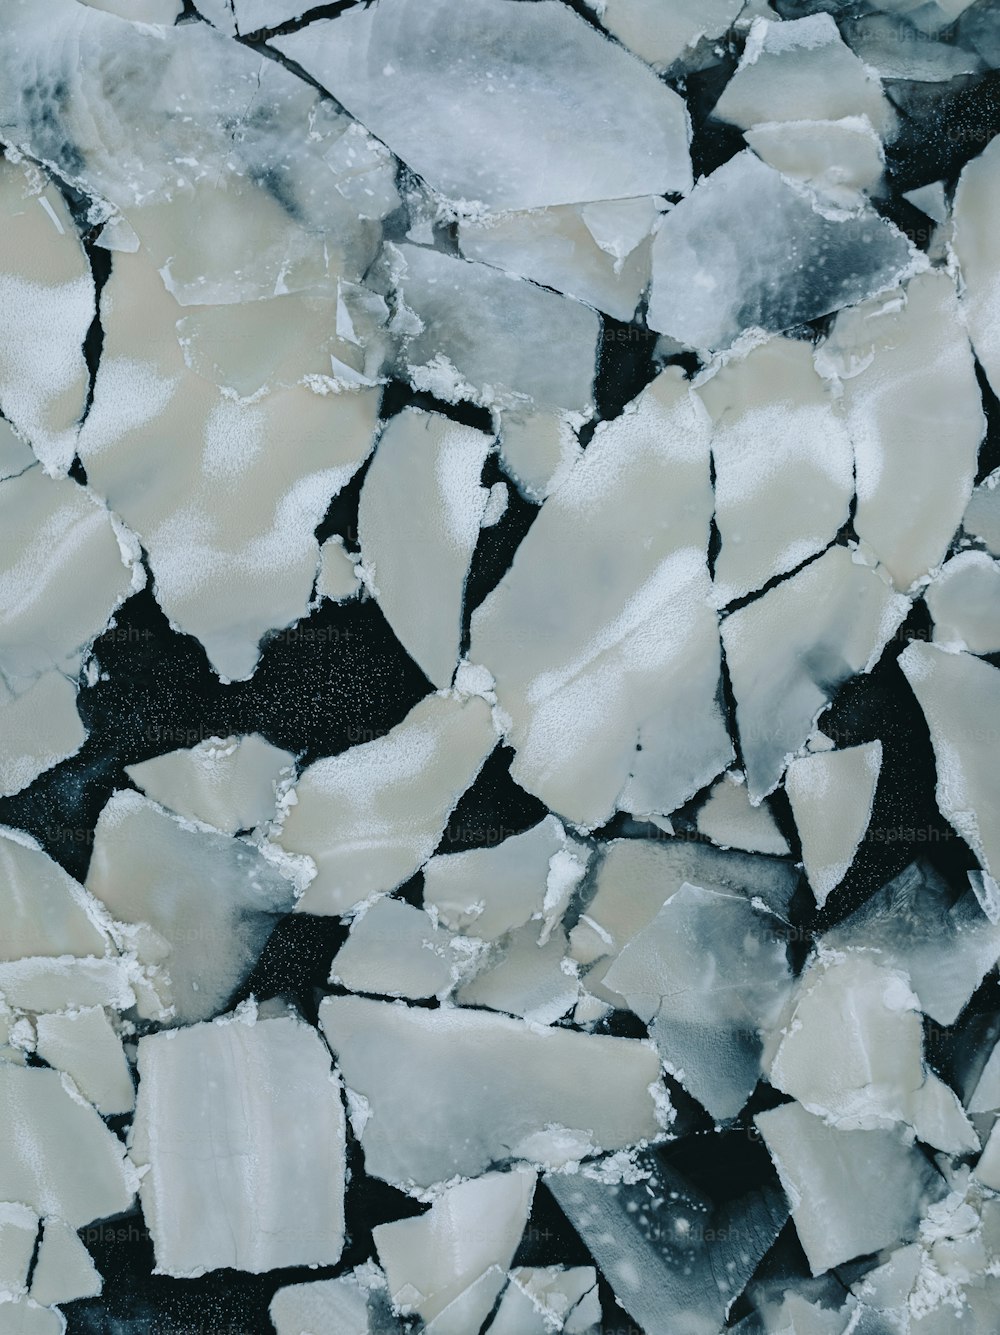 Ein Haufen Eisbrocken sitzt auf einer schwarzen Oberfläche